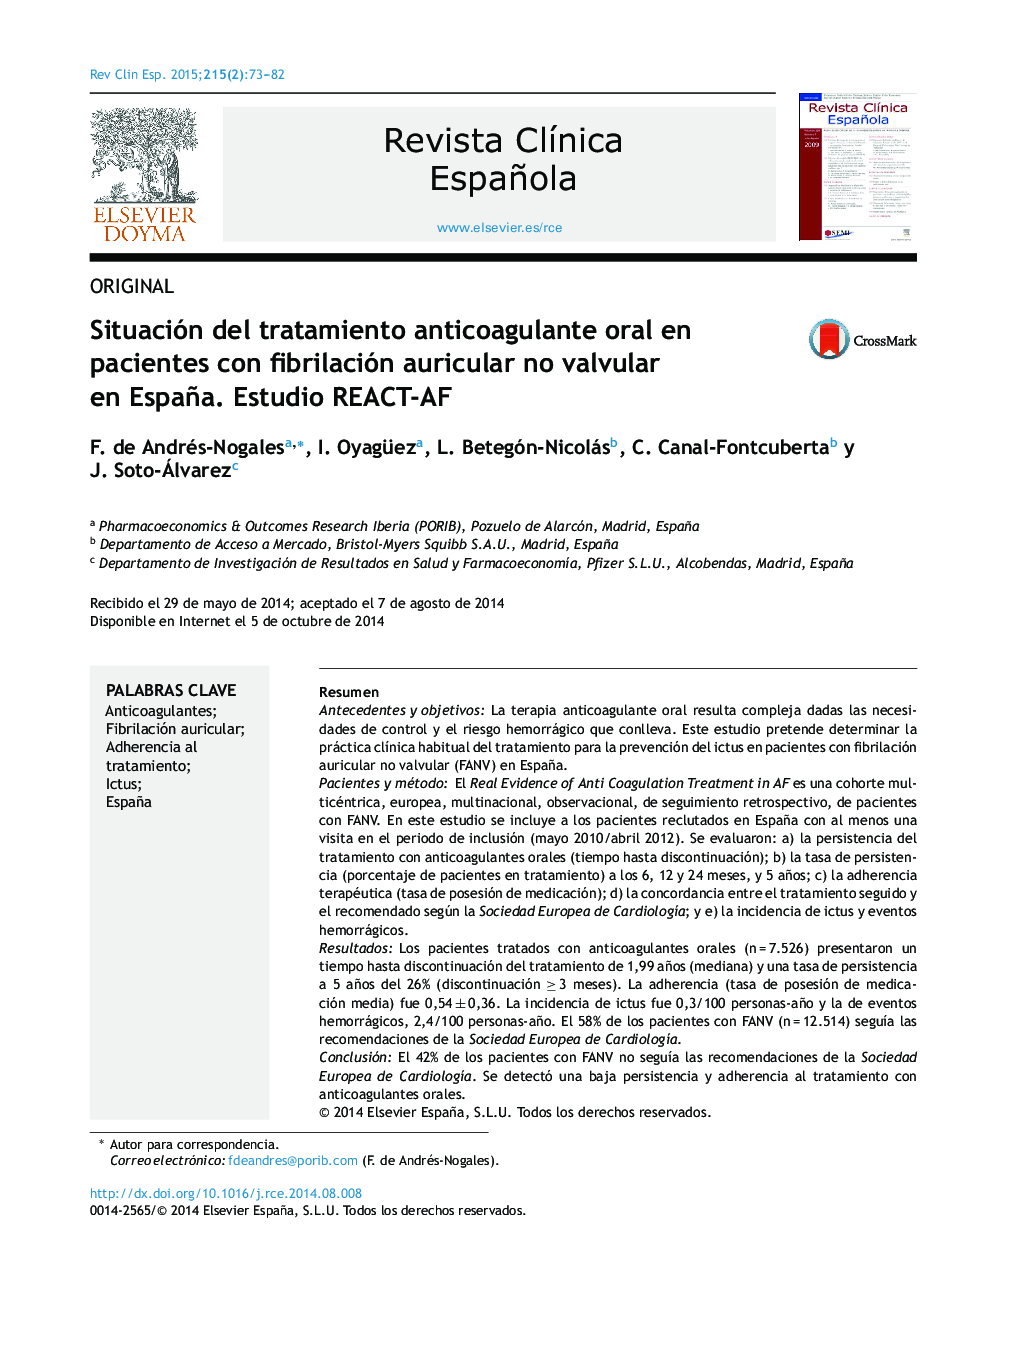 Situación del tratamiento anticoagulante oral en pacientes con fibrilación auricular no valvular en España. Estudio REACT-AF